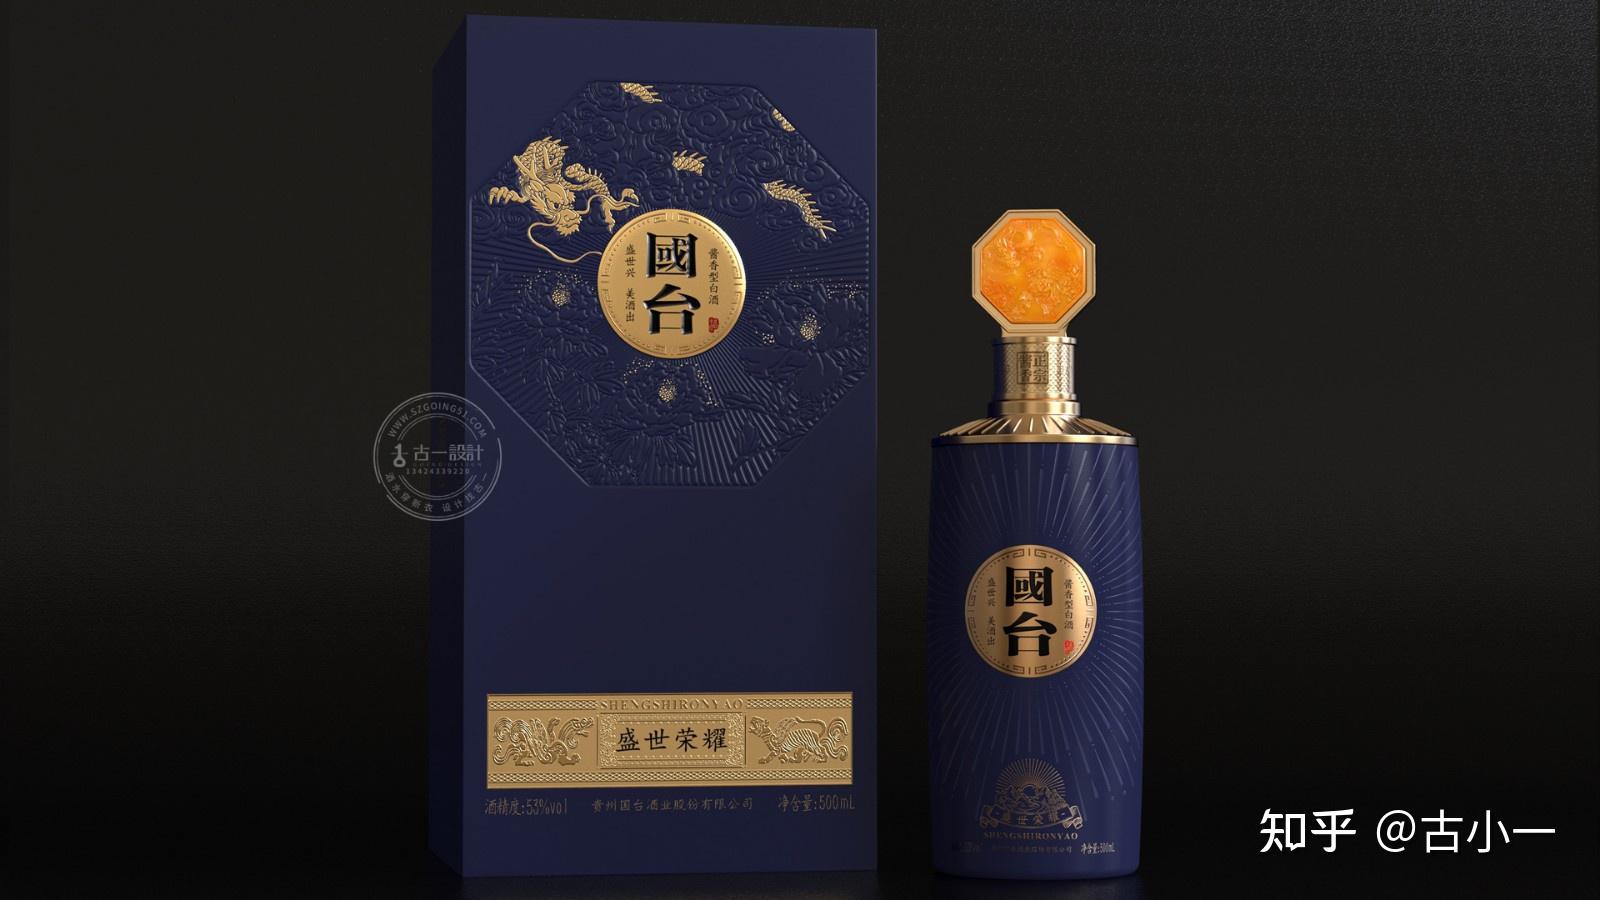 国台盛世荣耀酱香型白酒瓶包装设计案例深圳白酒设计公司古一设计